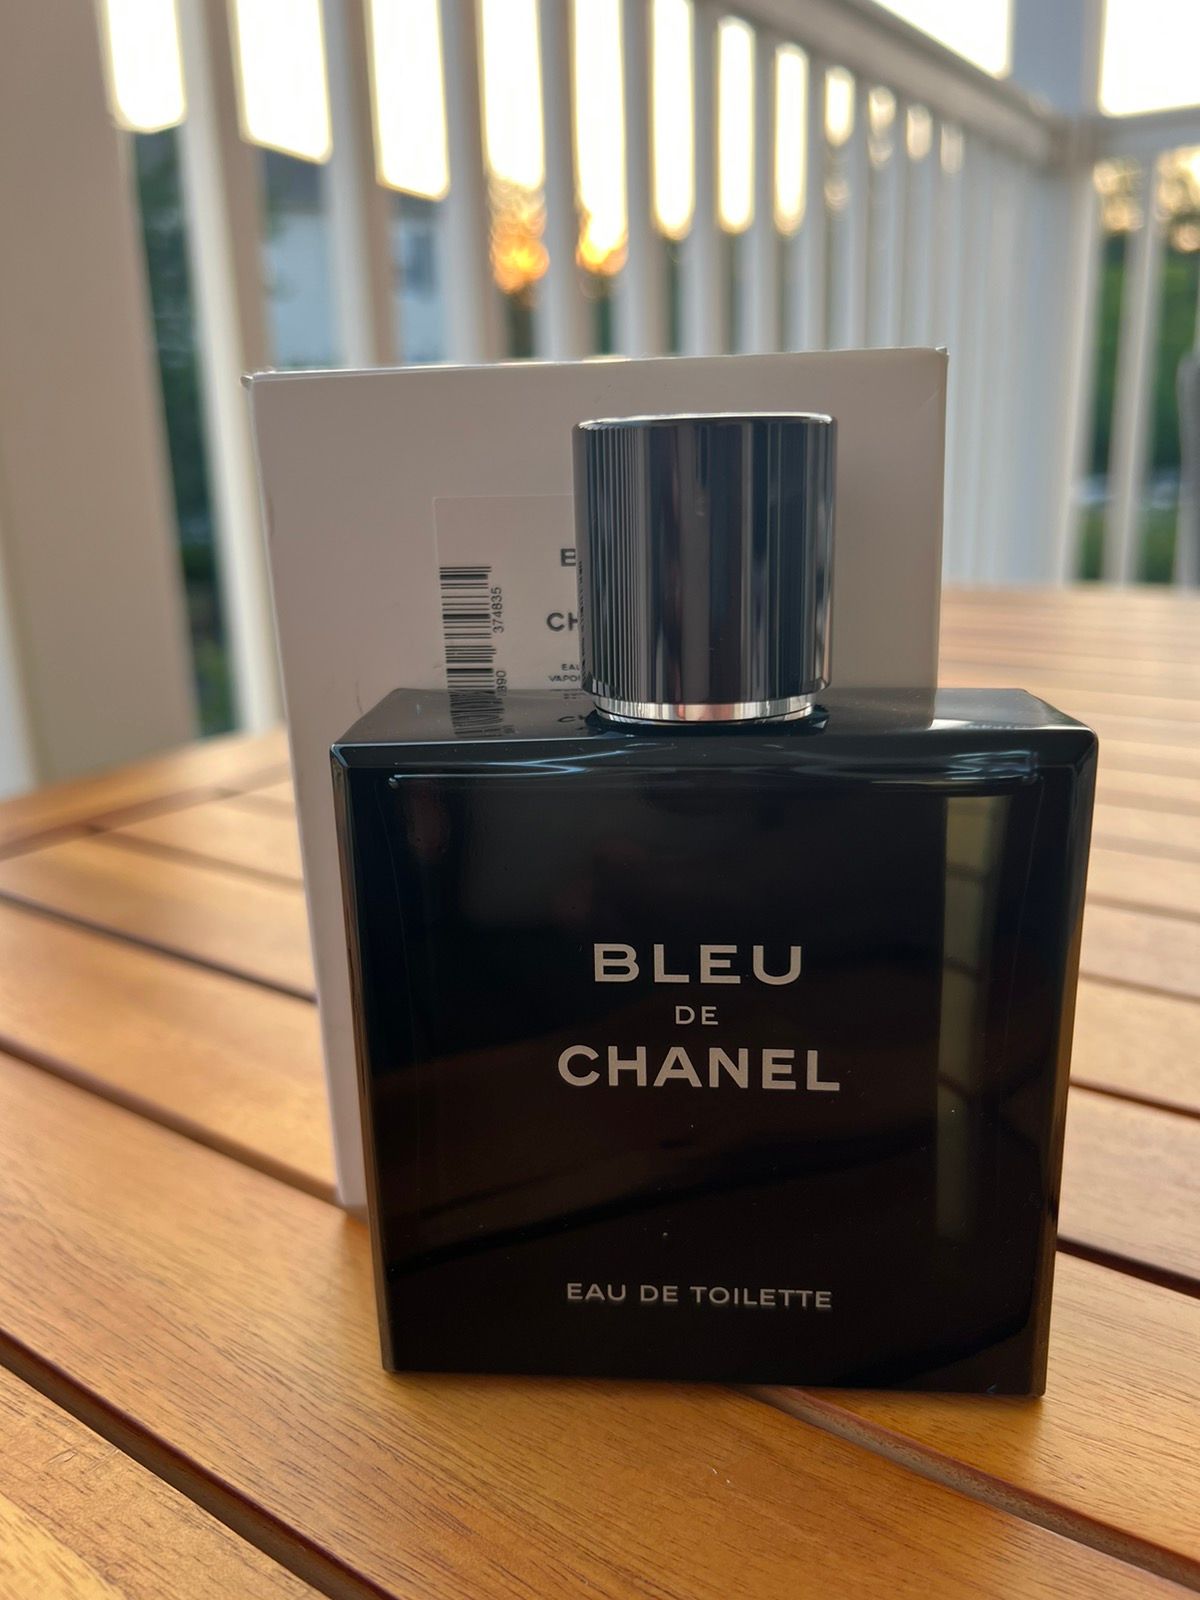 Chanel Chanel Bleu De Chanel Eau de Toilette fragrance, 5 oz.